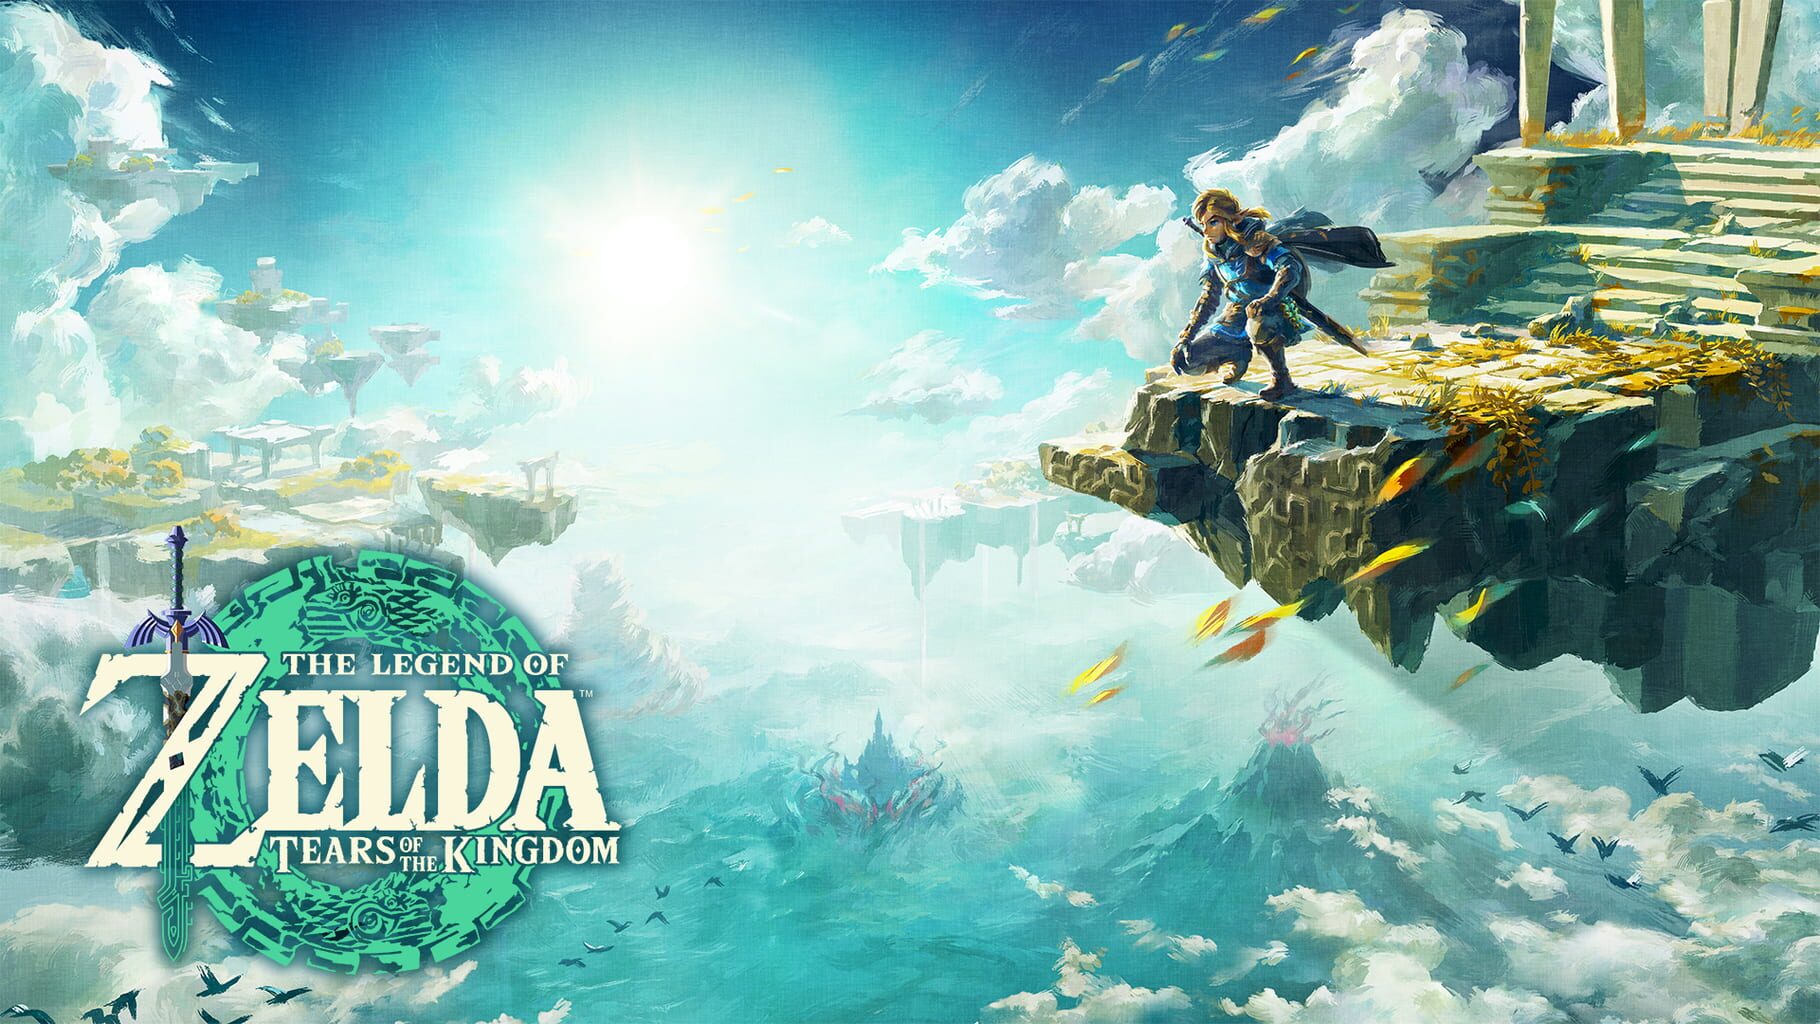 Artwork for The Legend of Zelda: Tears of the Kingdom